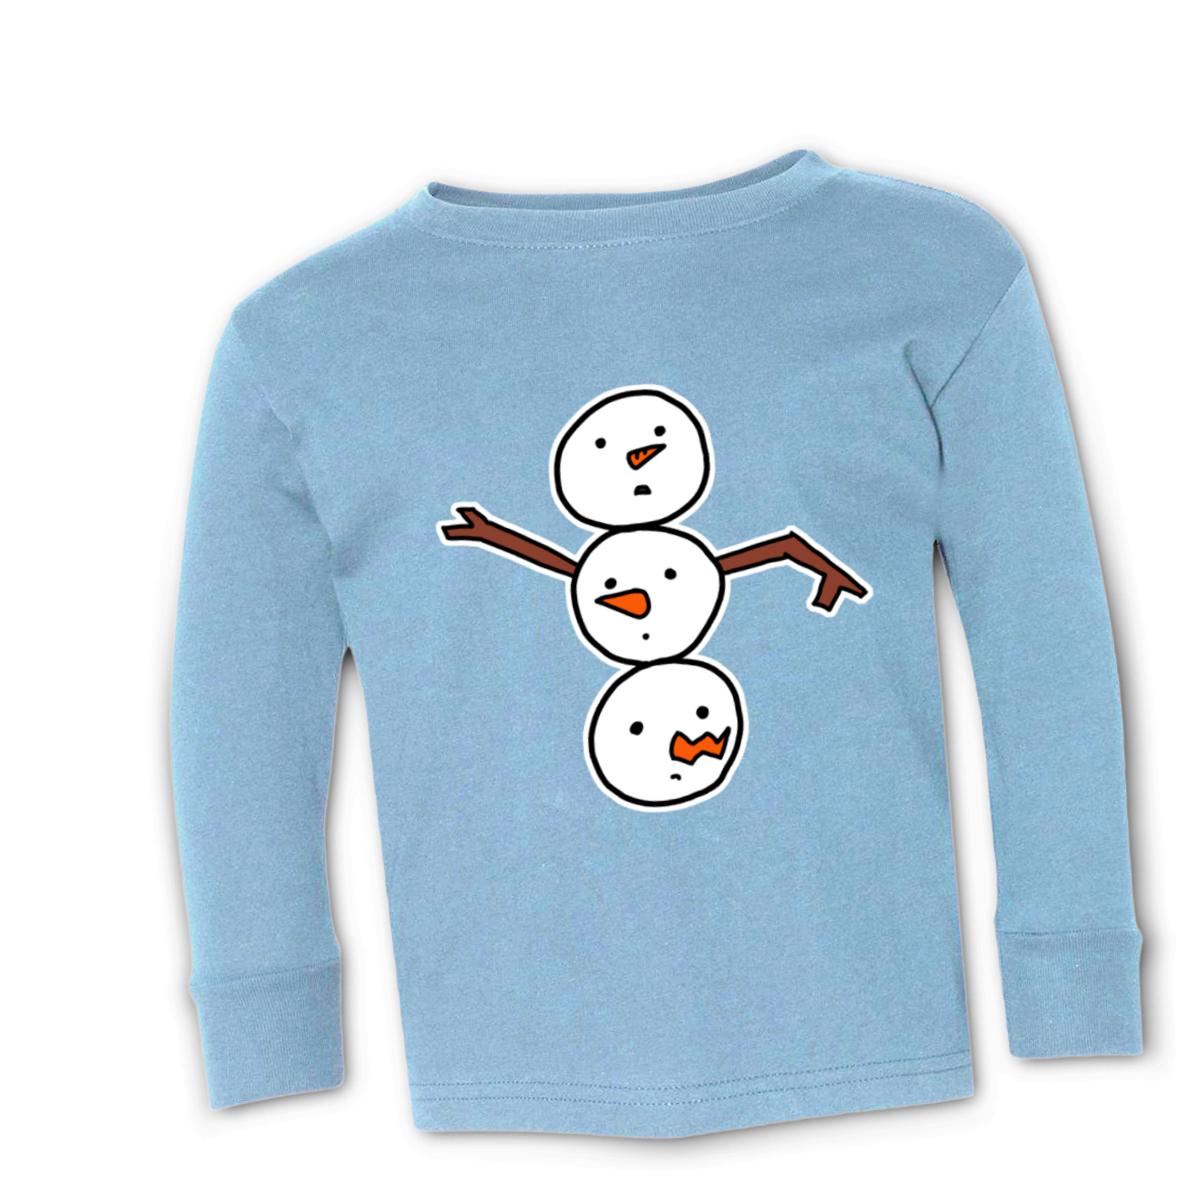 Snowman All Heads Toddler Long Sleeve Tee 56T light-blue